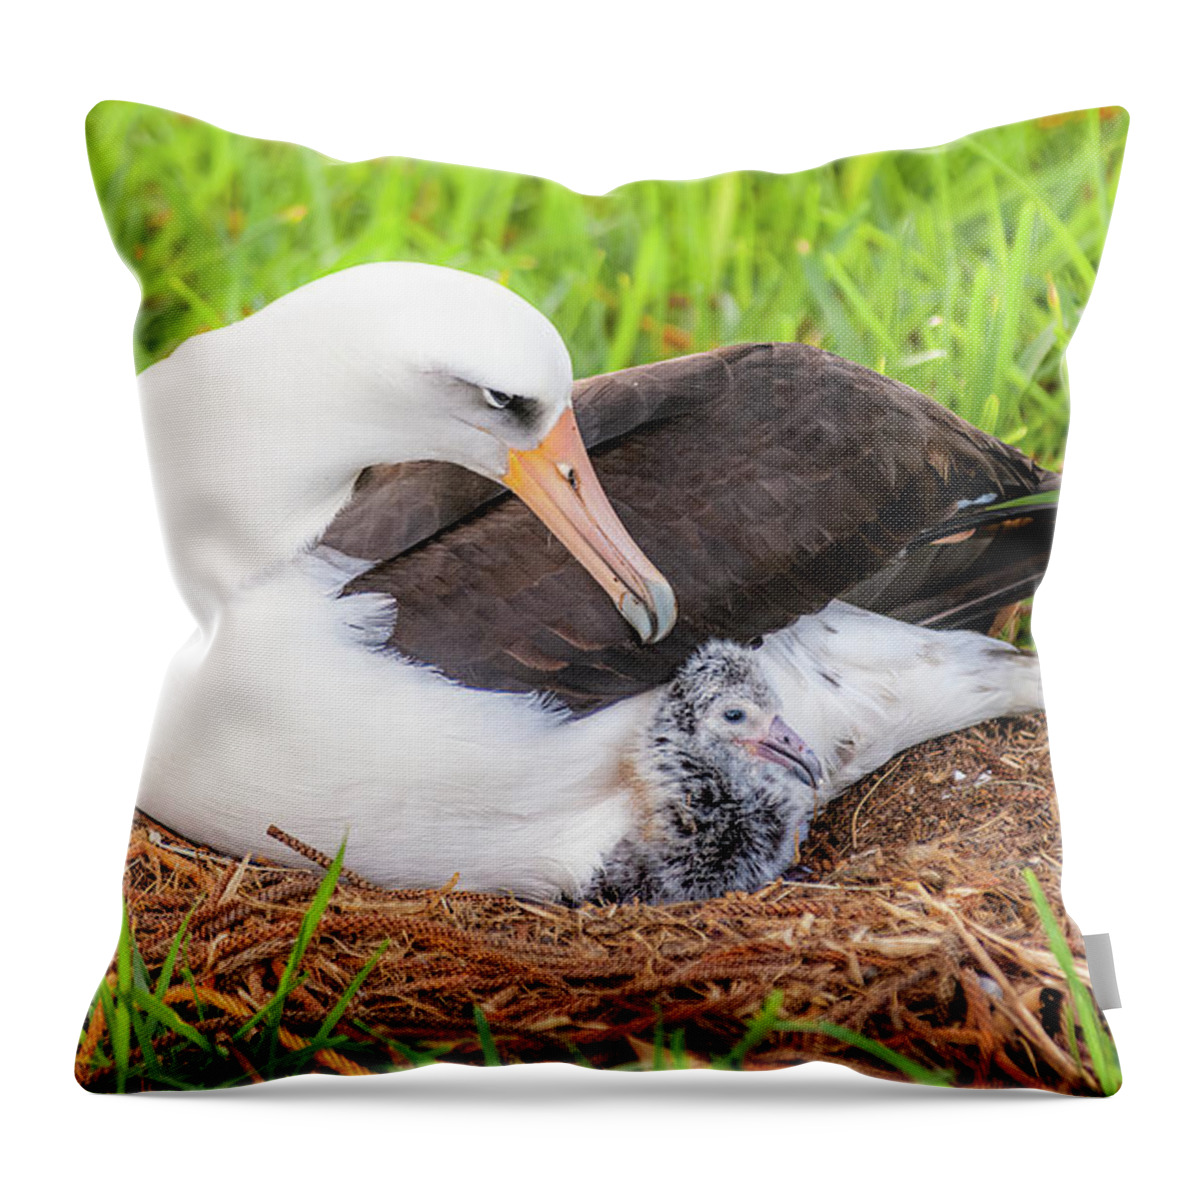 Kauai Throw Pillow featuring the photograph Laysan Albatross and Chick. by Doug Davidson